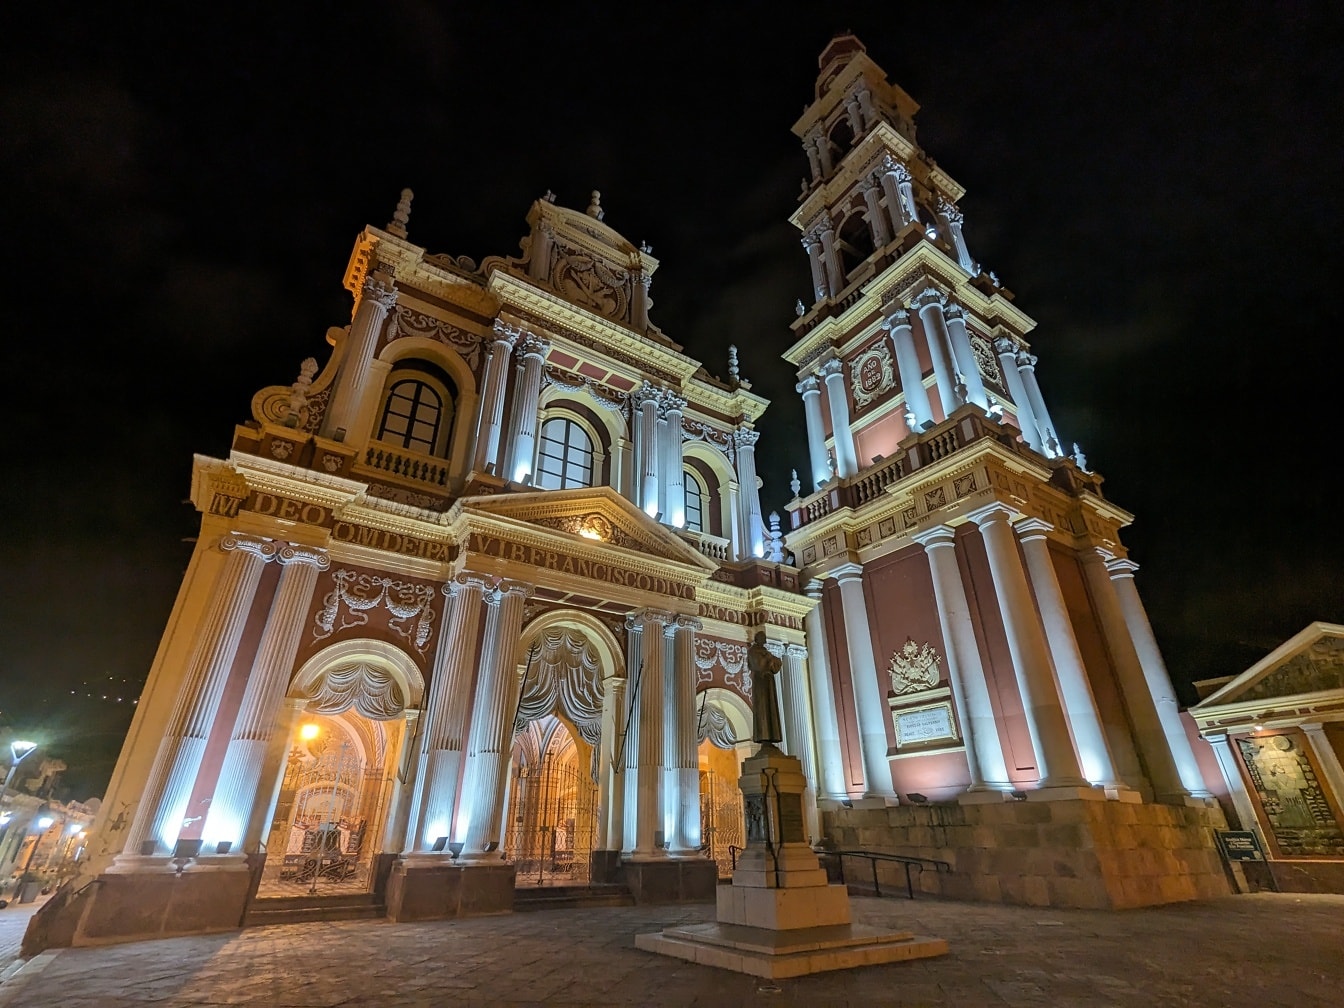 Arjantin’in Salta şehrinde San Francisco Kilisesi, önünde meydanda bir heykel ile geceleri